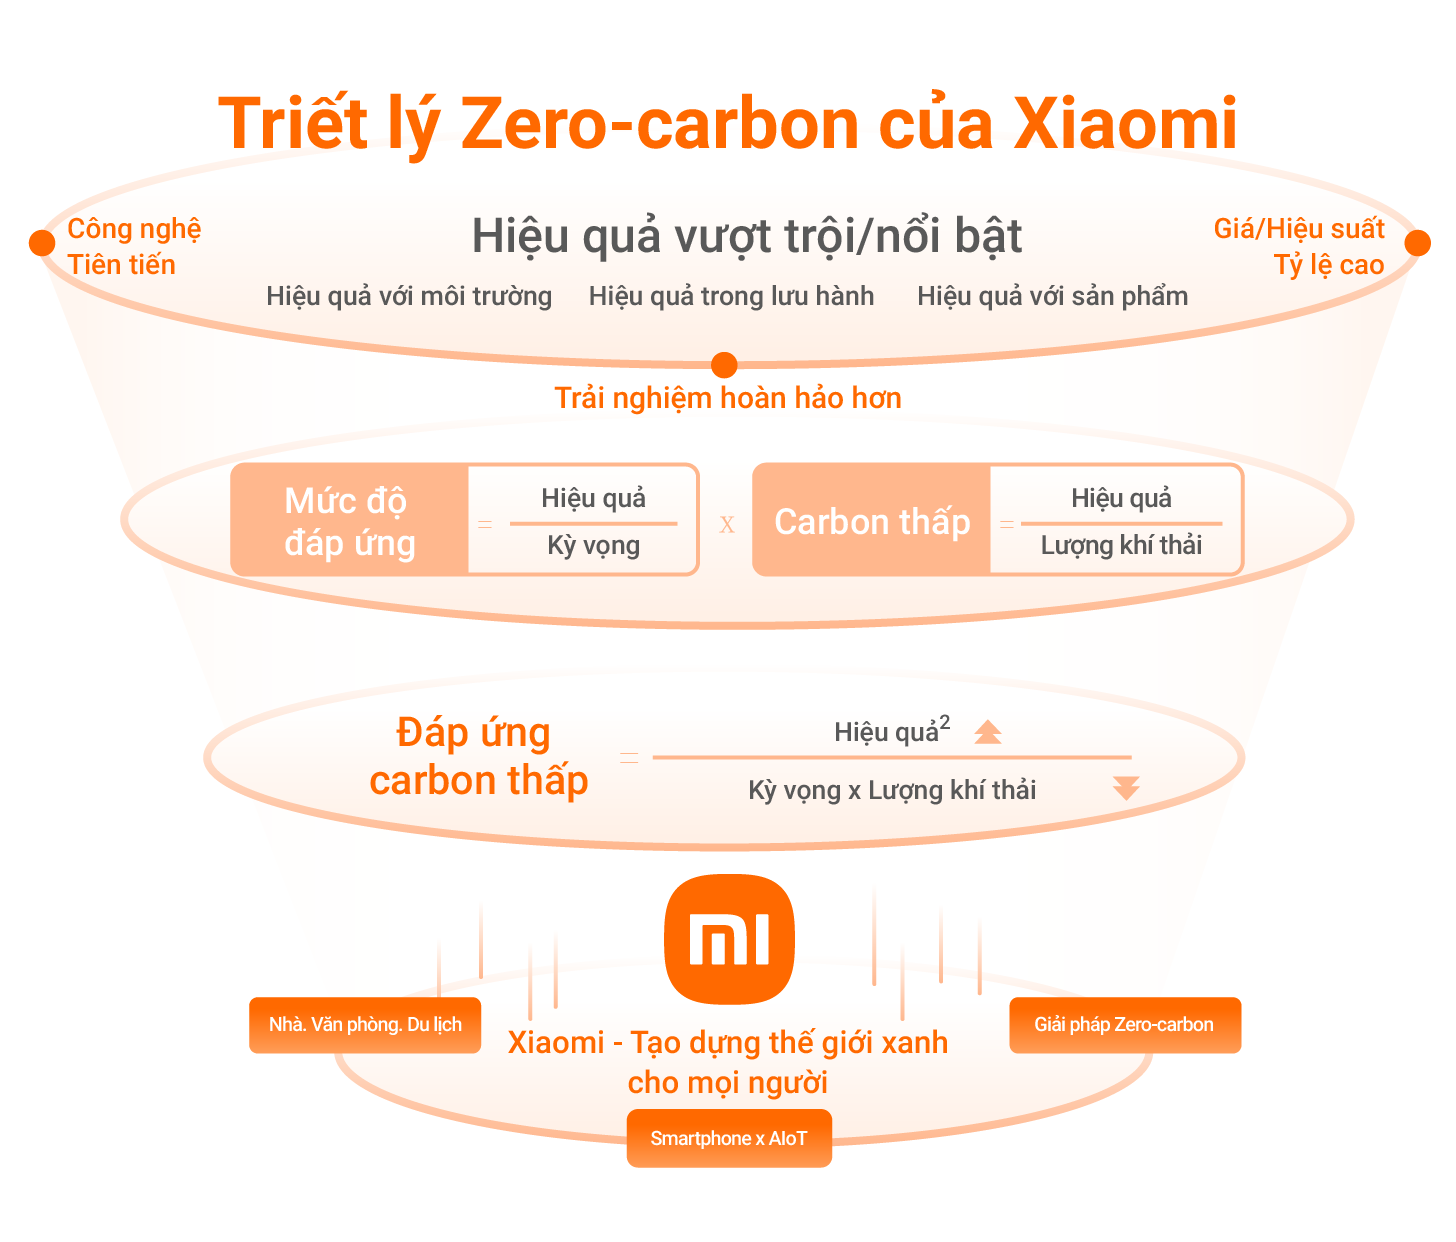 Triet ly Zero Carbon cua Xiaomi MMOSITE - Thông tin công nghệ, review, thủ thuật PC, gaming